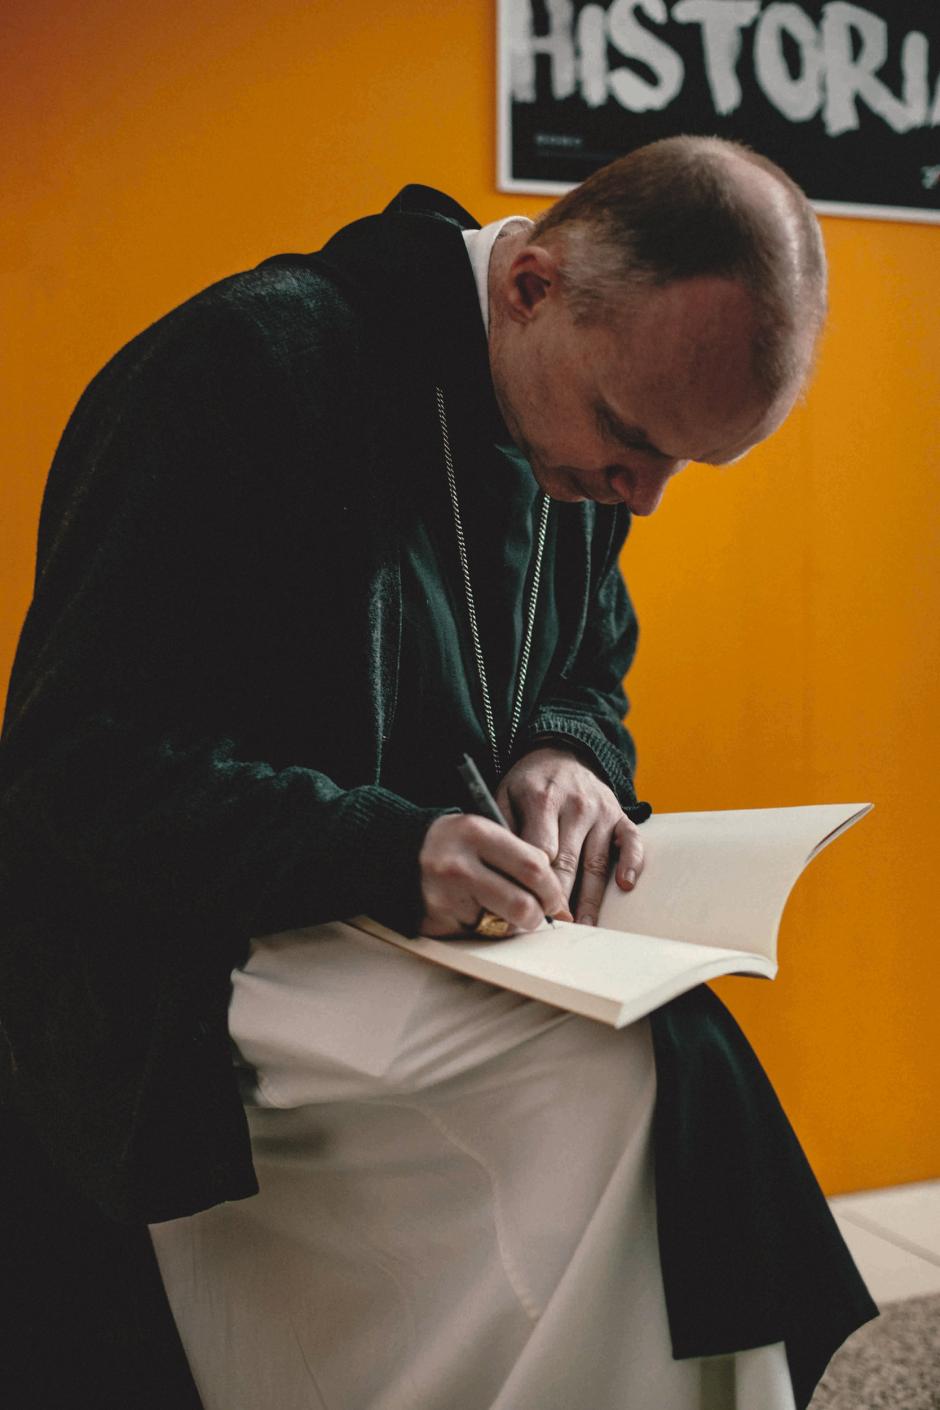 El obispo Erik Varden, dedicando su libro 'Castidad' (Ediciones Encuentro)